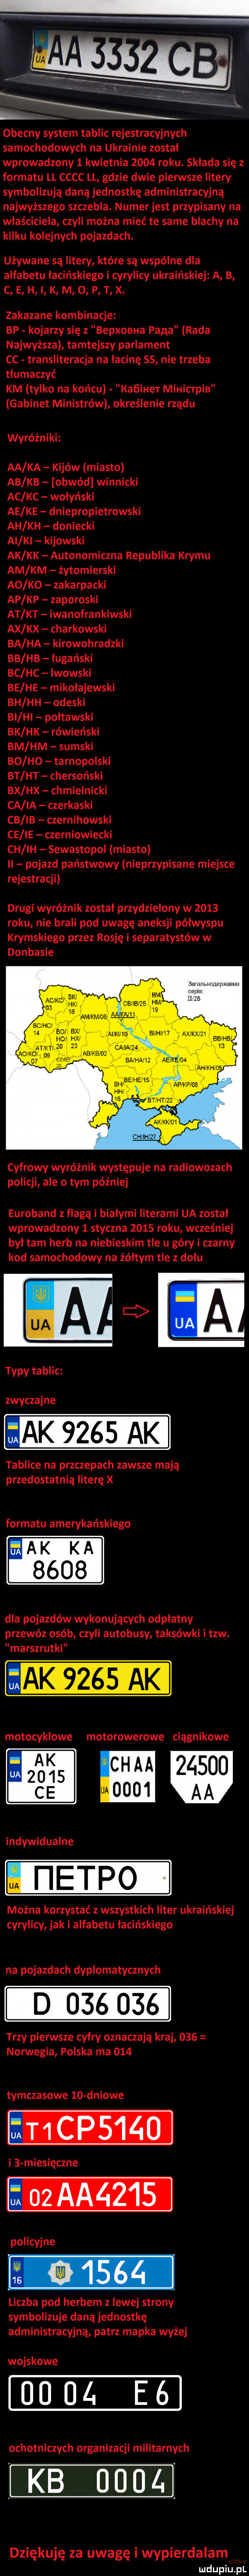 obecny system tablic rejestracyjnych samochodowych na ukrainie został wprowadzony   kwietnia      roku. składa się z formatu ll cccc ll gdzie dwie pierwsze litery symbolizują daną jednostkę administracyjną najwyższego szczebla. numerjest przypisany na właściciela czyli można mieć te same blachy na kilku kolejnych pojazdach. używane są litery które są wspólne dla alfabetu łacińskiego i cyrylicy ukraińskiej a b c e h i k m o p t x. zakazane kombinacje bp kojarzy się z bepxoeua pana rada najwyższa tamtejszy parlament cc transliteracja na łacinę    nie trzeba tłumaczyć km tylko na końcu kaóiher mihicrpib gabinet ministrów określenie rządu wyróżniki aa ka kijów miasto ab kb obwód winnicki ac kc wołyński ae ke dniepropietrowski ah kh doniecki ai ki kijowski ak kk autonomiczna republika krymu am km żytomierski a  k  zakarpacki ap kp zaporoski at kt iwanofrankowski ax kx charkowski ba ha kirowogradzki bb hb ługański bc hc lwowski be he mikołajewski bh hh odeski bi hi połtawski bk hk rówieński bm hm sueski bo ho tarnopolski bt ht chersoński bx hx chmielnicki ca ia czerkaski cb ib czernihowski ce ie czerniowiecki ch ih sewastopol miasto pojazd państwowy nieprzypisane miejsce rejestracji drugi wyróżnik został przydzielony w      roku nie brali pod uwagę aneksji półwyspu krymskiego przez rosję i separatystów w donbasie nenonep uczka  mm ax aemesud bhjeehe apjfp oe hh cyfrowy wyróżnik występuje na radiowozach policji ale o tym później euroland z flagą i białymi literami ua został wprowadzony   styczna      roku wcześniej był tam herb na niebieskim tle u górki czarny kod samochodowy na żółtym tle z dołu zwyczajne ak     tablice na przczepach zawsze mają przedostatnią literę x formatu amerykańskiego ak ka      dla pojazdów wykonujących odpłatny przewóz osób czyli autobusy taksówki i tlw. marszrutki motocyklowe motorowerowe ciągnikowe ak ch aa            modo  aa indywidualne u i ietpo można korzystać z wszystkich liter ukraińskiej cyrylicy jak i alfabetu łacińskiego na pojazdach dyplomatycznych d        trzy pierwsze cyfry oznaczają kraj     norwegia polska ma     tymczasowe    dniowe i   miesięczne policyjne liczba pod herbem z lewej strony symbolizuje daną jednostkę administracyjną patrz mapka wyżej wojskowe    ul. e  ochotniczych organizacji militarnych kb      dziękuję za uwagę i wypierdalam